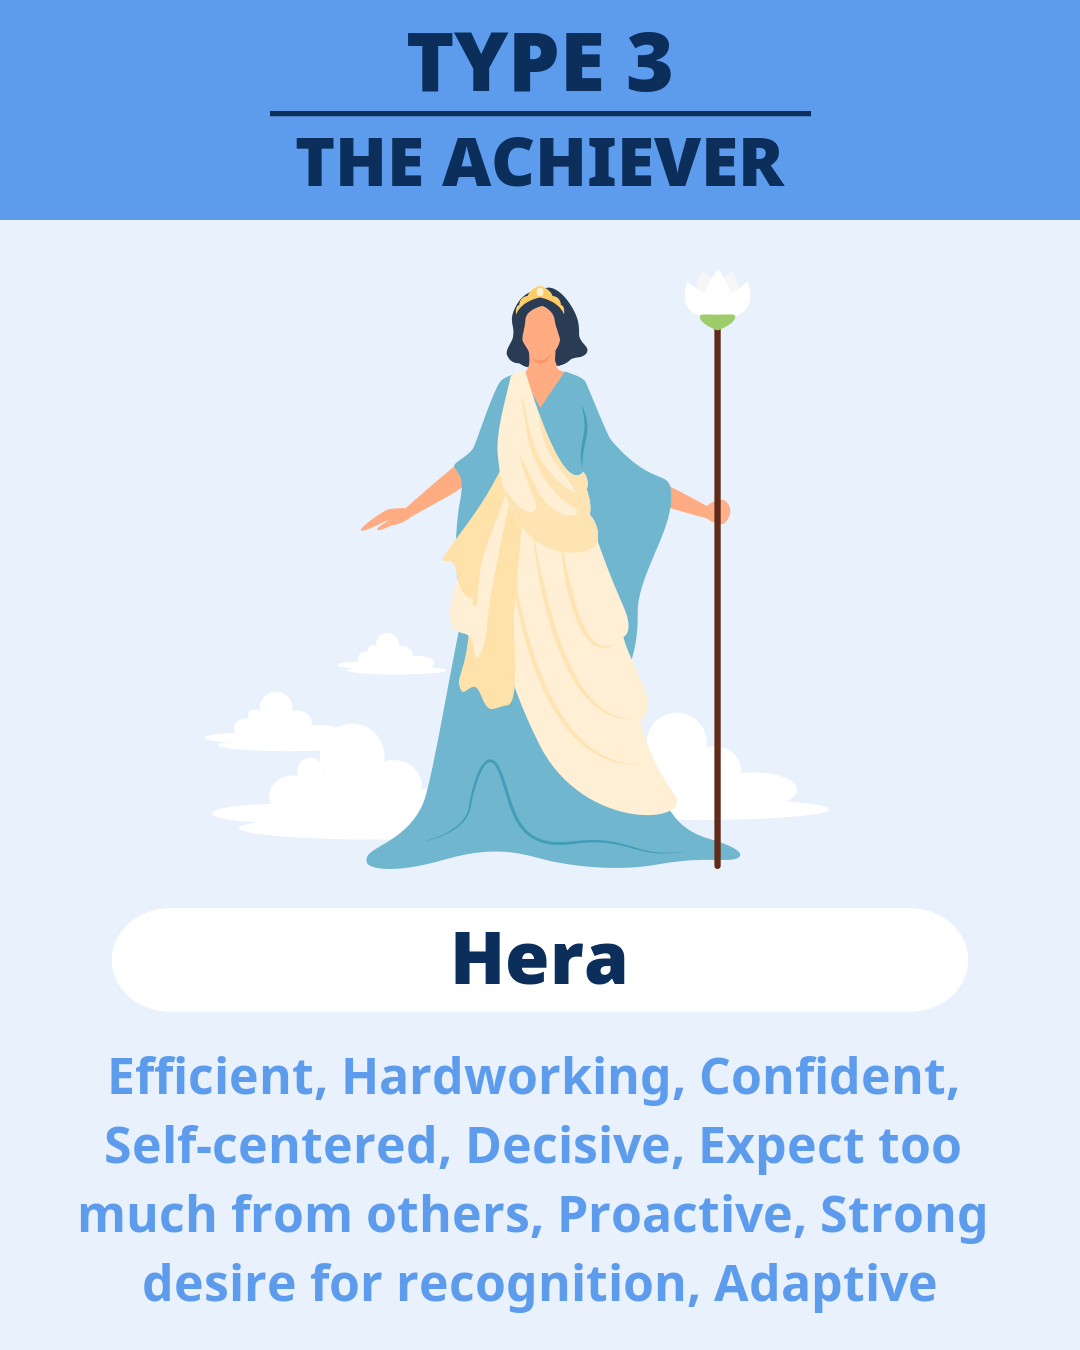 TYPE 3 - Hera(THE ACHIEVER)